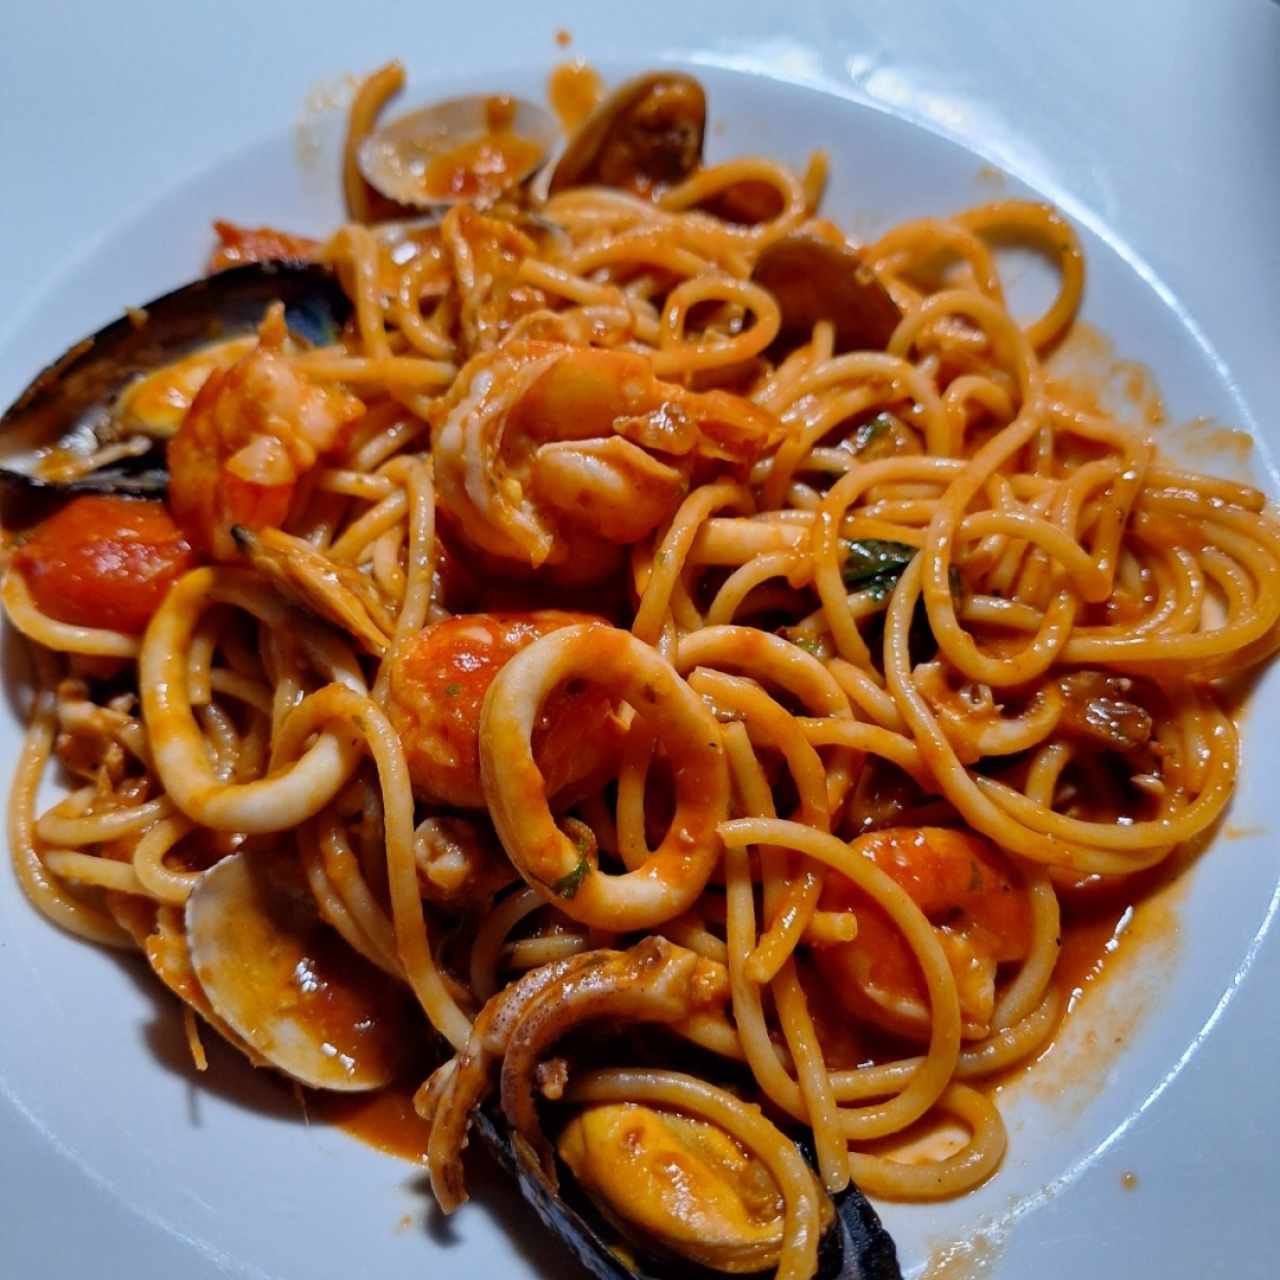 Spaghetti Frutti di mare full recomendado en salsa roja.. delicia!